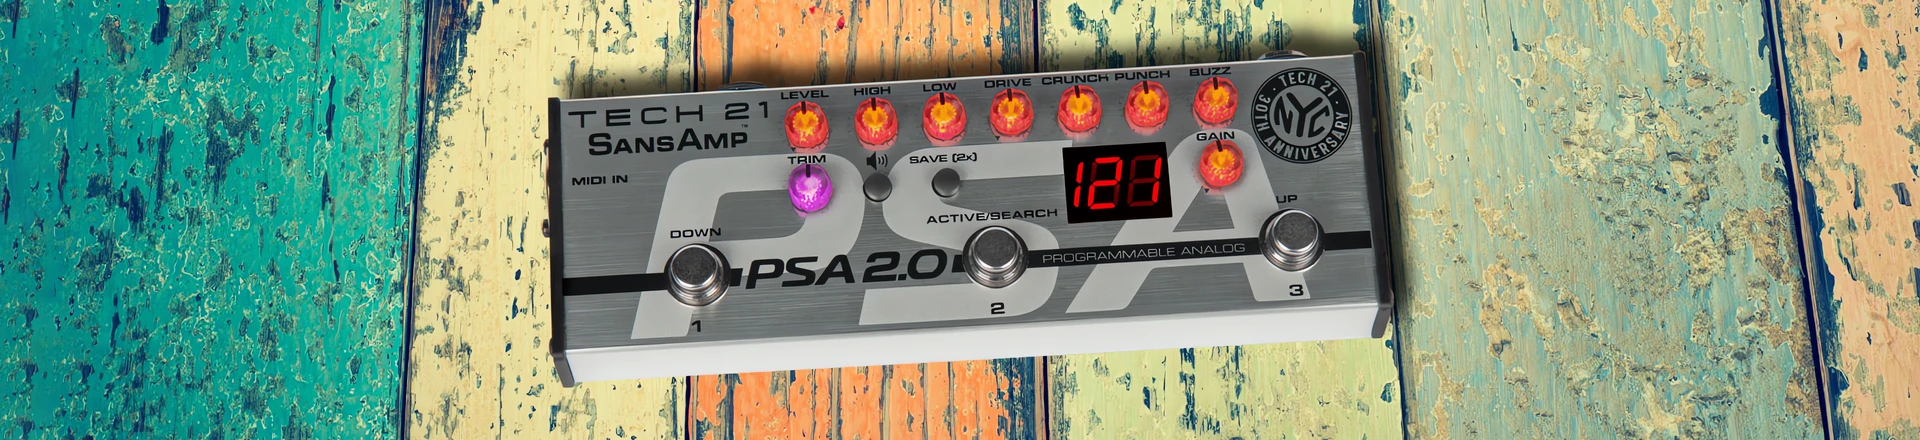 Tech 21 przedstawia wyjątkowy, rocznicowy model PSA 2.0 